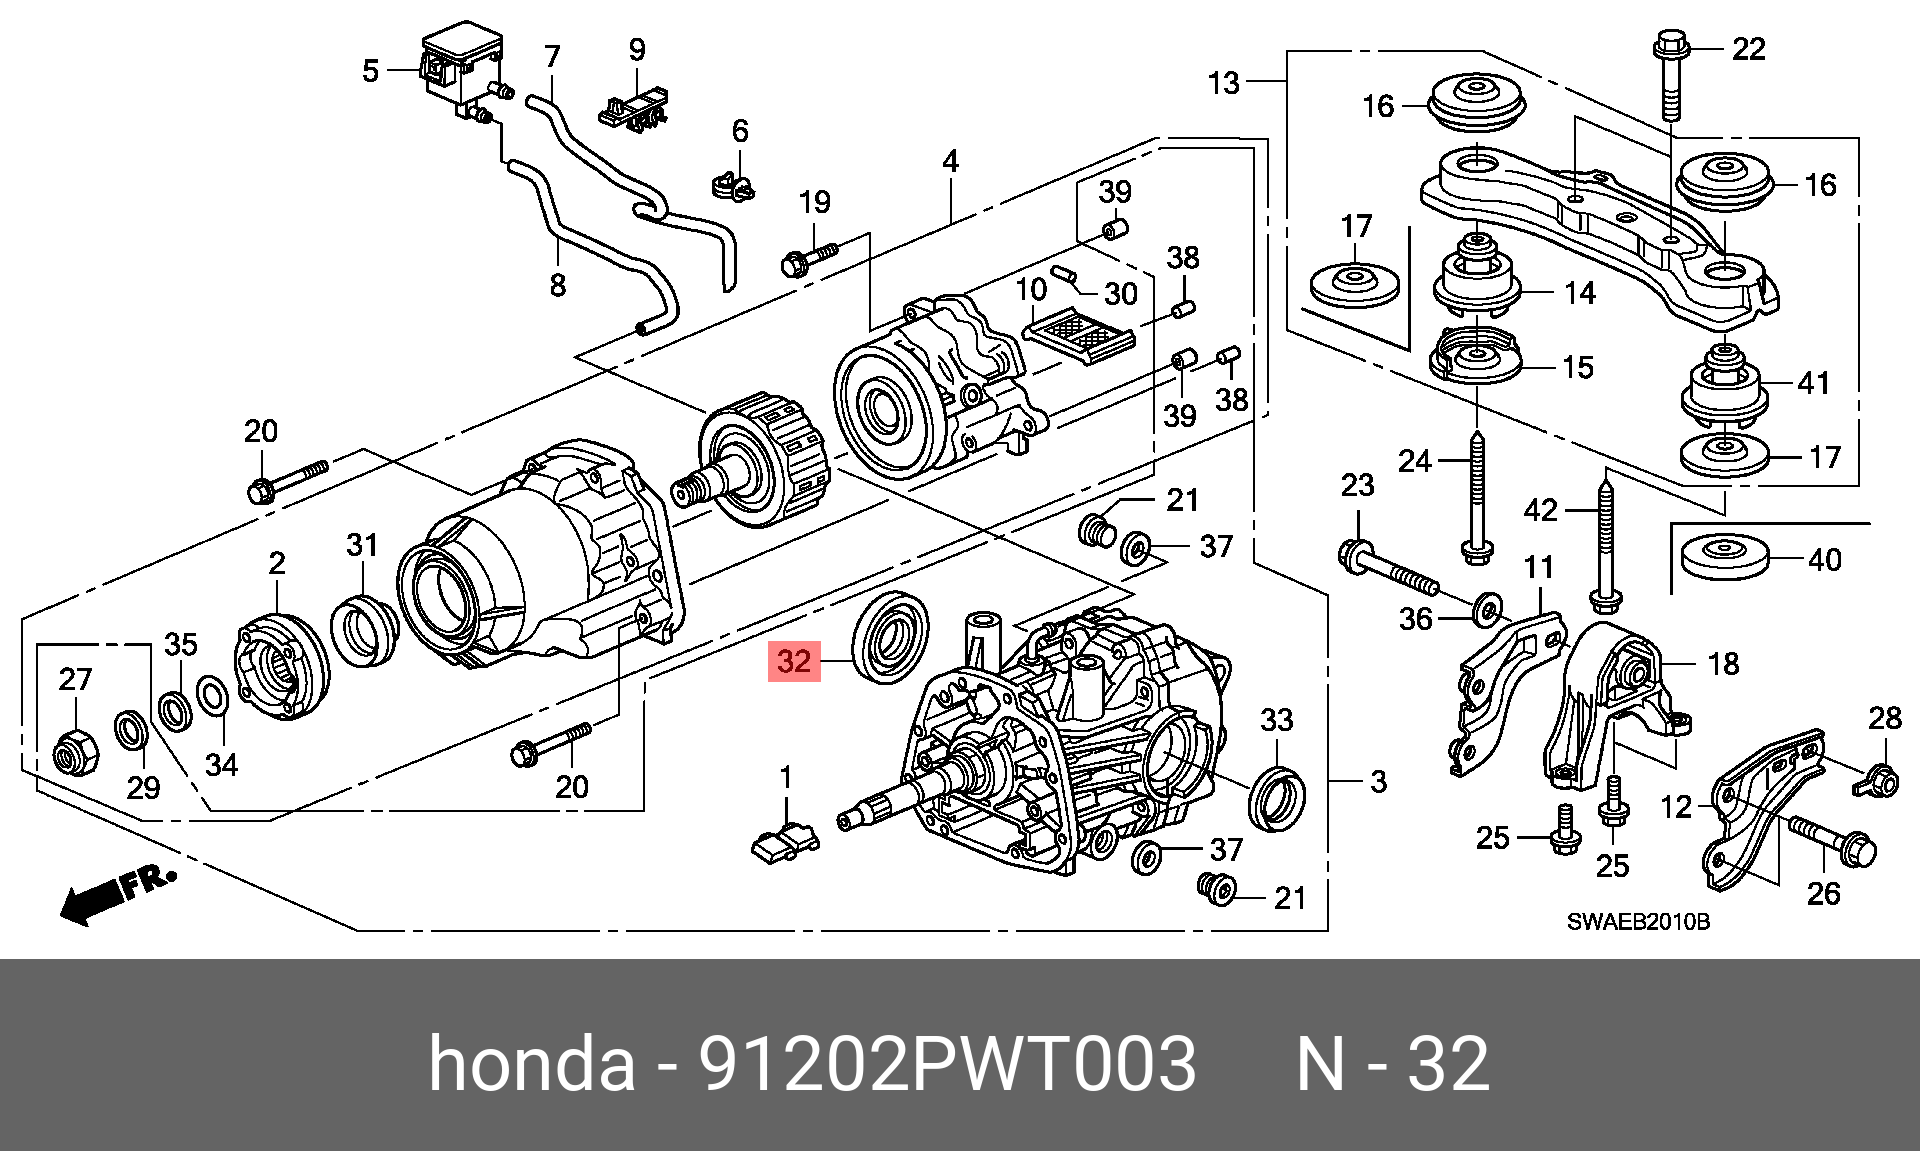 Honda cr редукторы. Схема заднего моста Хонда СРВ рд1. Схема заднего редуктора Honda CR-V Rd 1. Задний редуктор Хонда СРВ рд1 схема. Крепление заднего редуктора Honda CRV.